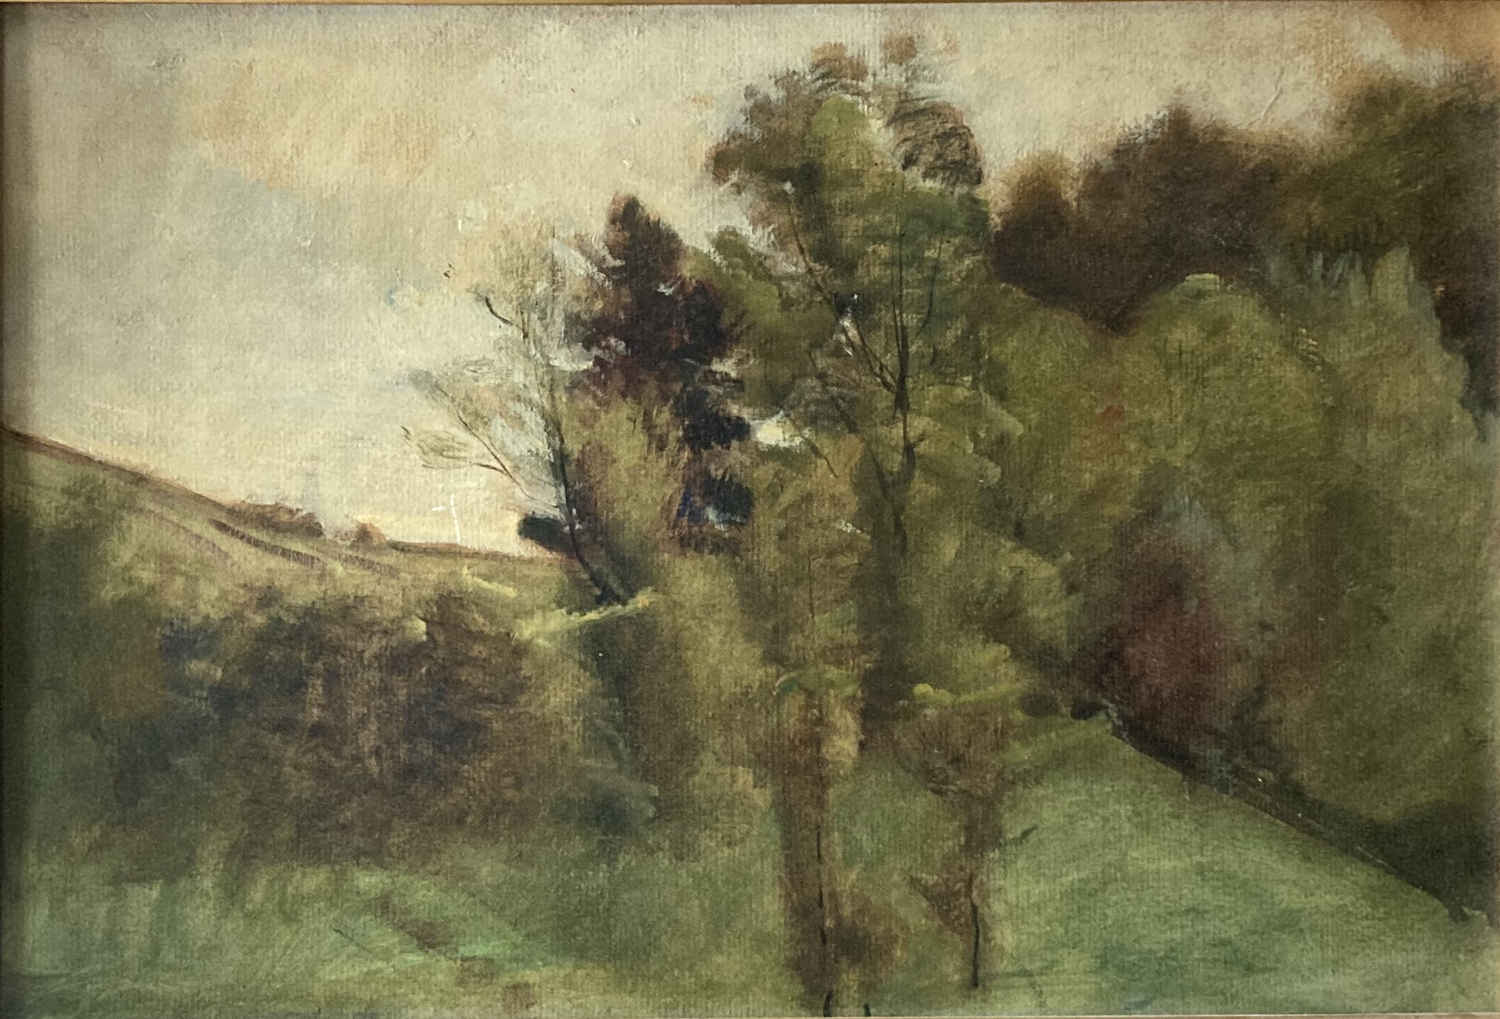 Peinture à l'huile du paysagiste suisse Barthélemy Menn, représentant principal de l'Ecole de Genève et peintre important du style paysage intime, prédécesseur de l'impressionnisme ; détail de paysage avec des arbres à la lisière d'une forêt.